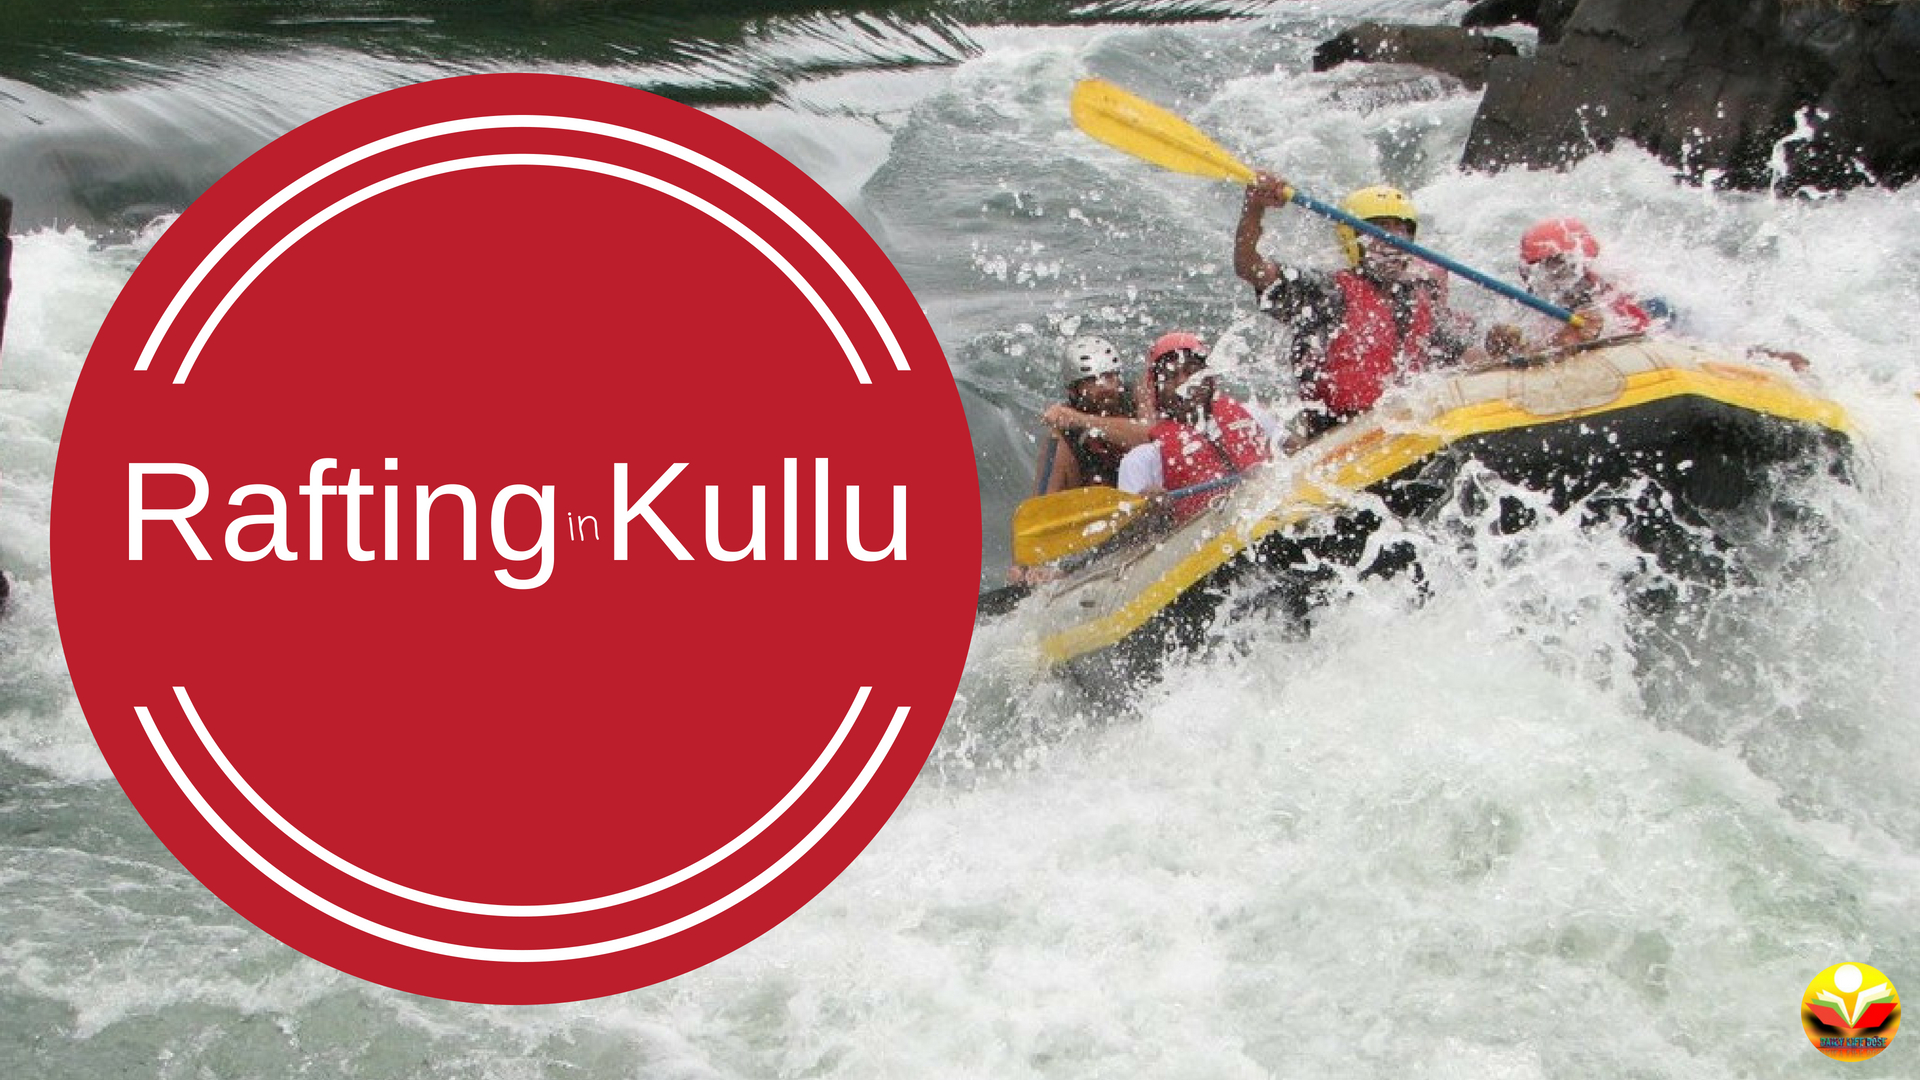 Rafting In Kullu